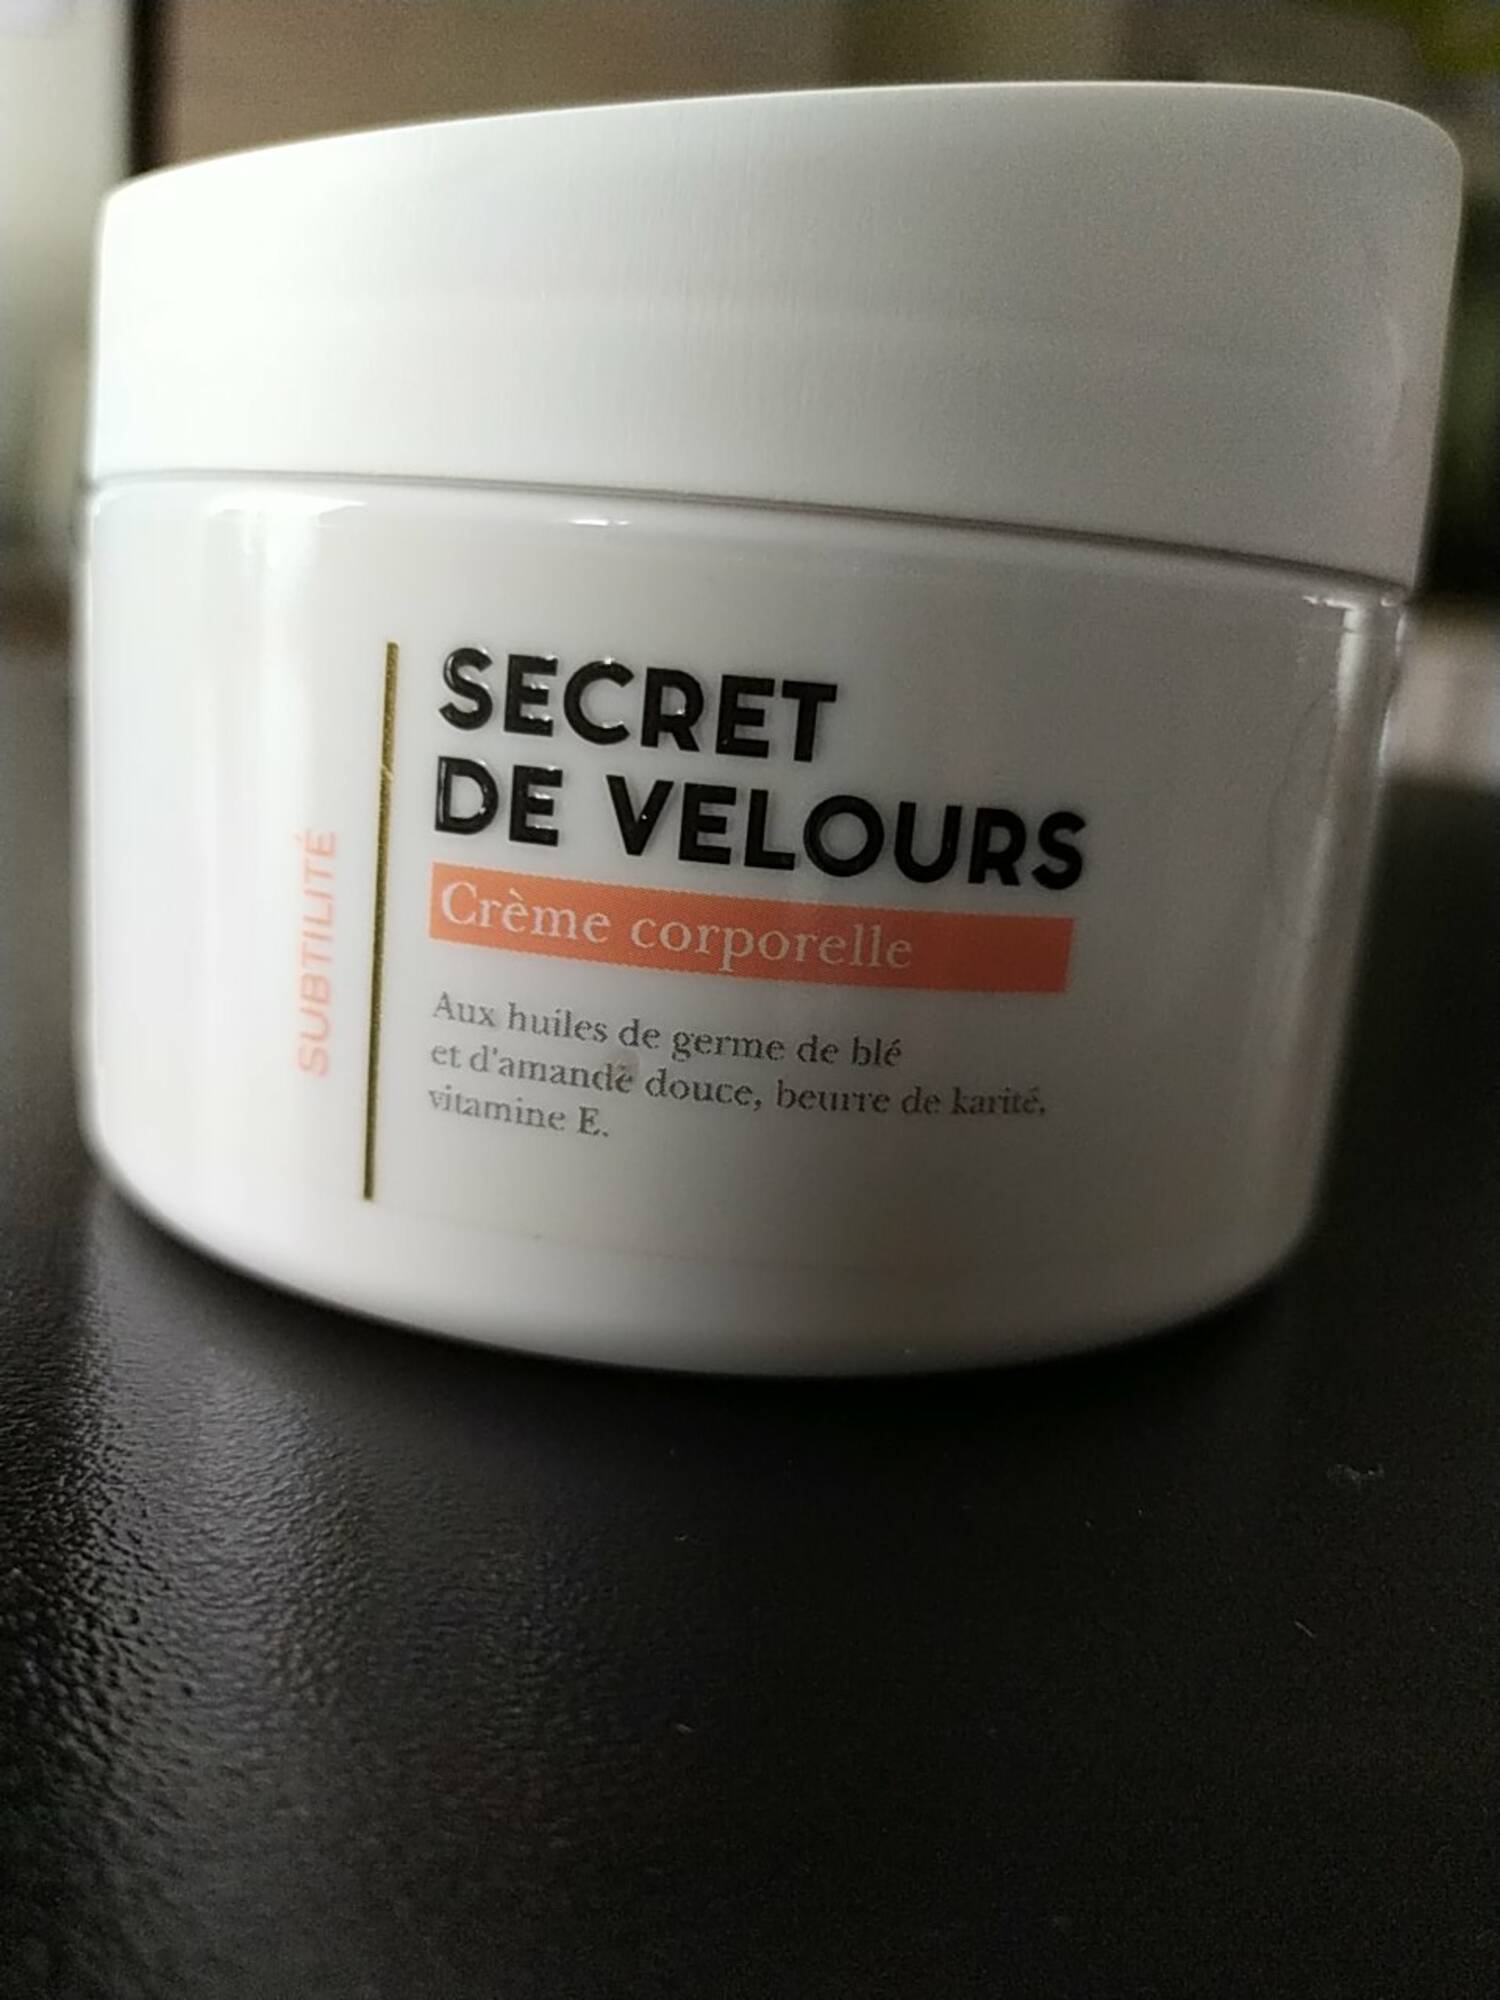 PIN UP SECRET - Secret de velours - Crème corporelle